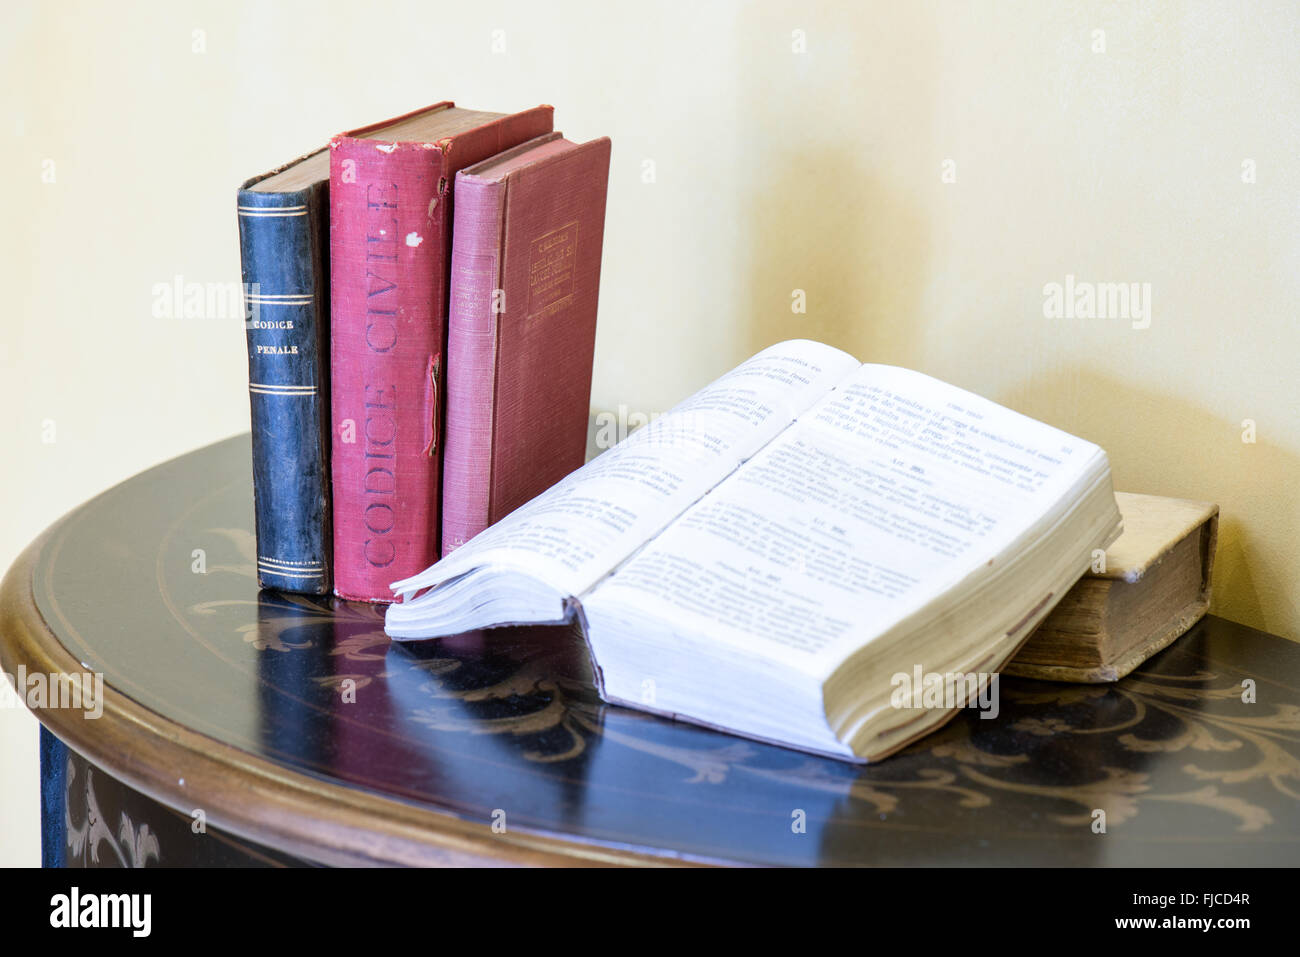 Libri sul tavolo immagini e fotografie stock ad alta risoluzione - Alamy